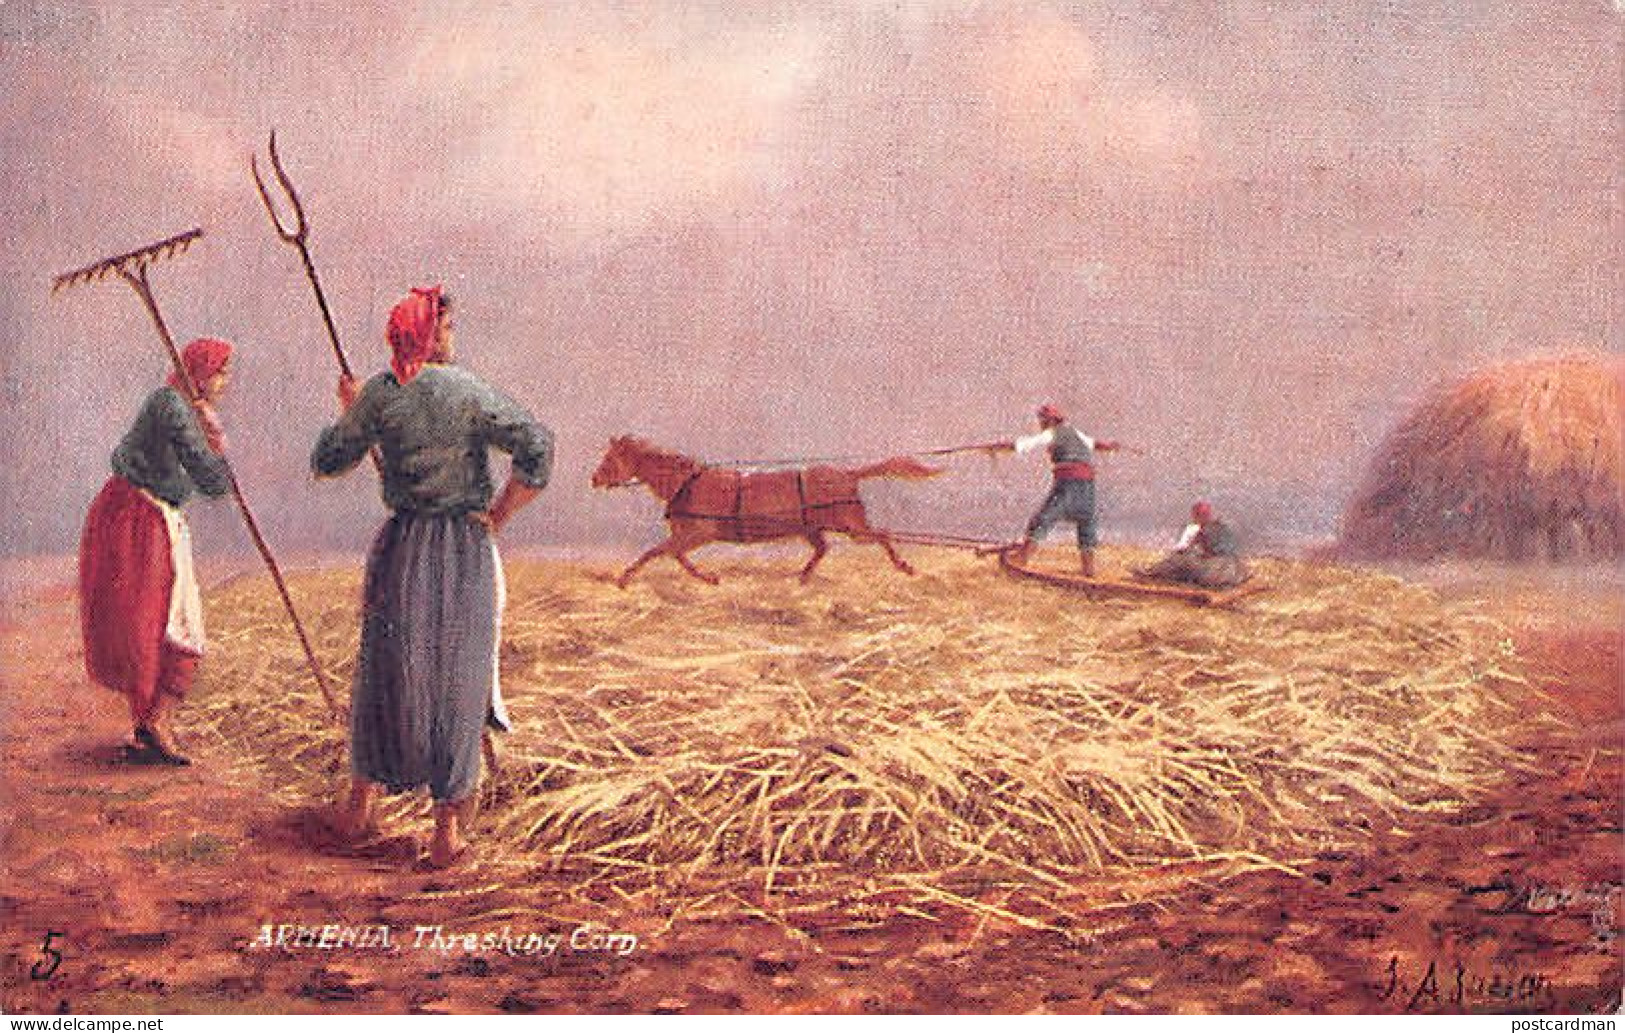 Armenia - Threshing Corn - Publ. Raphael Tuck & Sons - Armenia